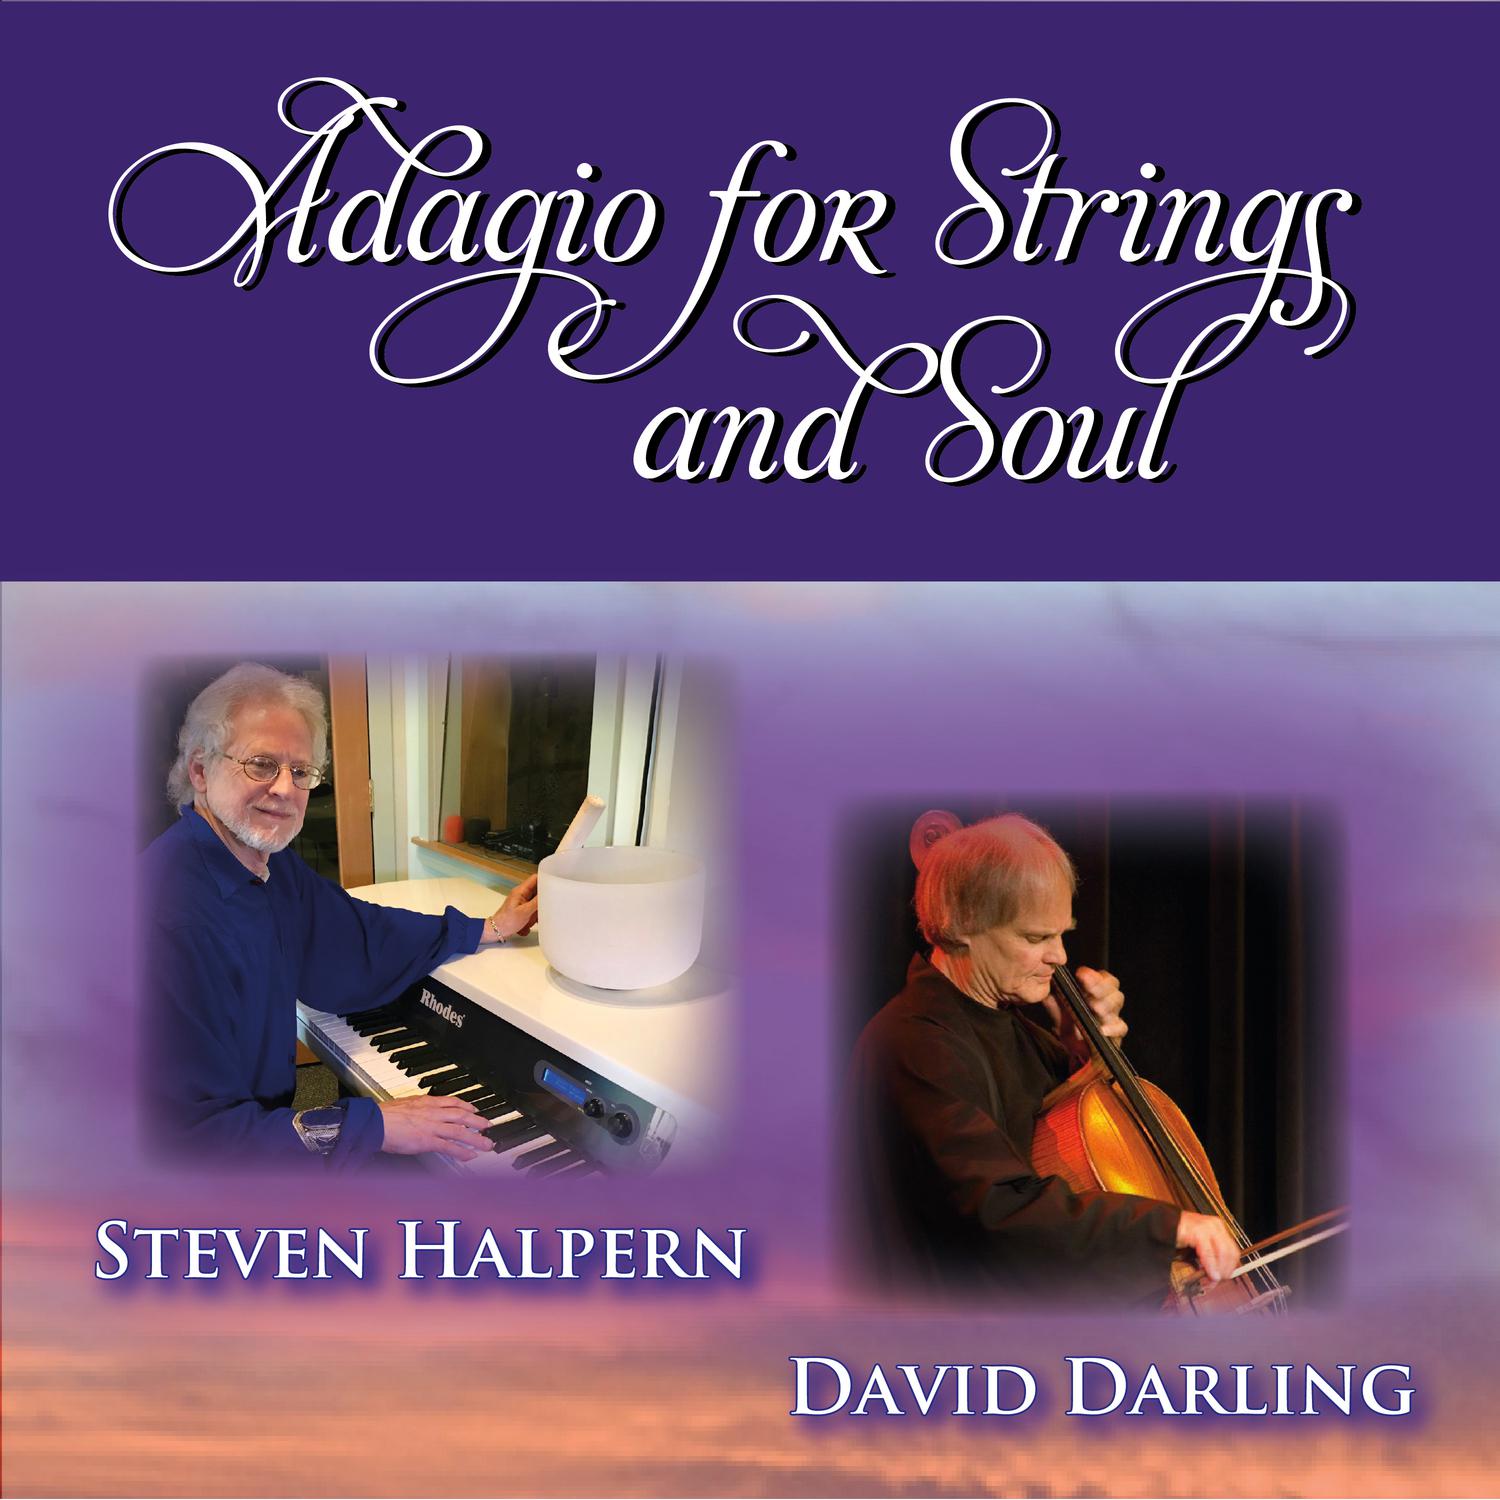 Steven Halpern - Adagio for Strings and Keys